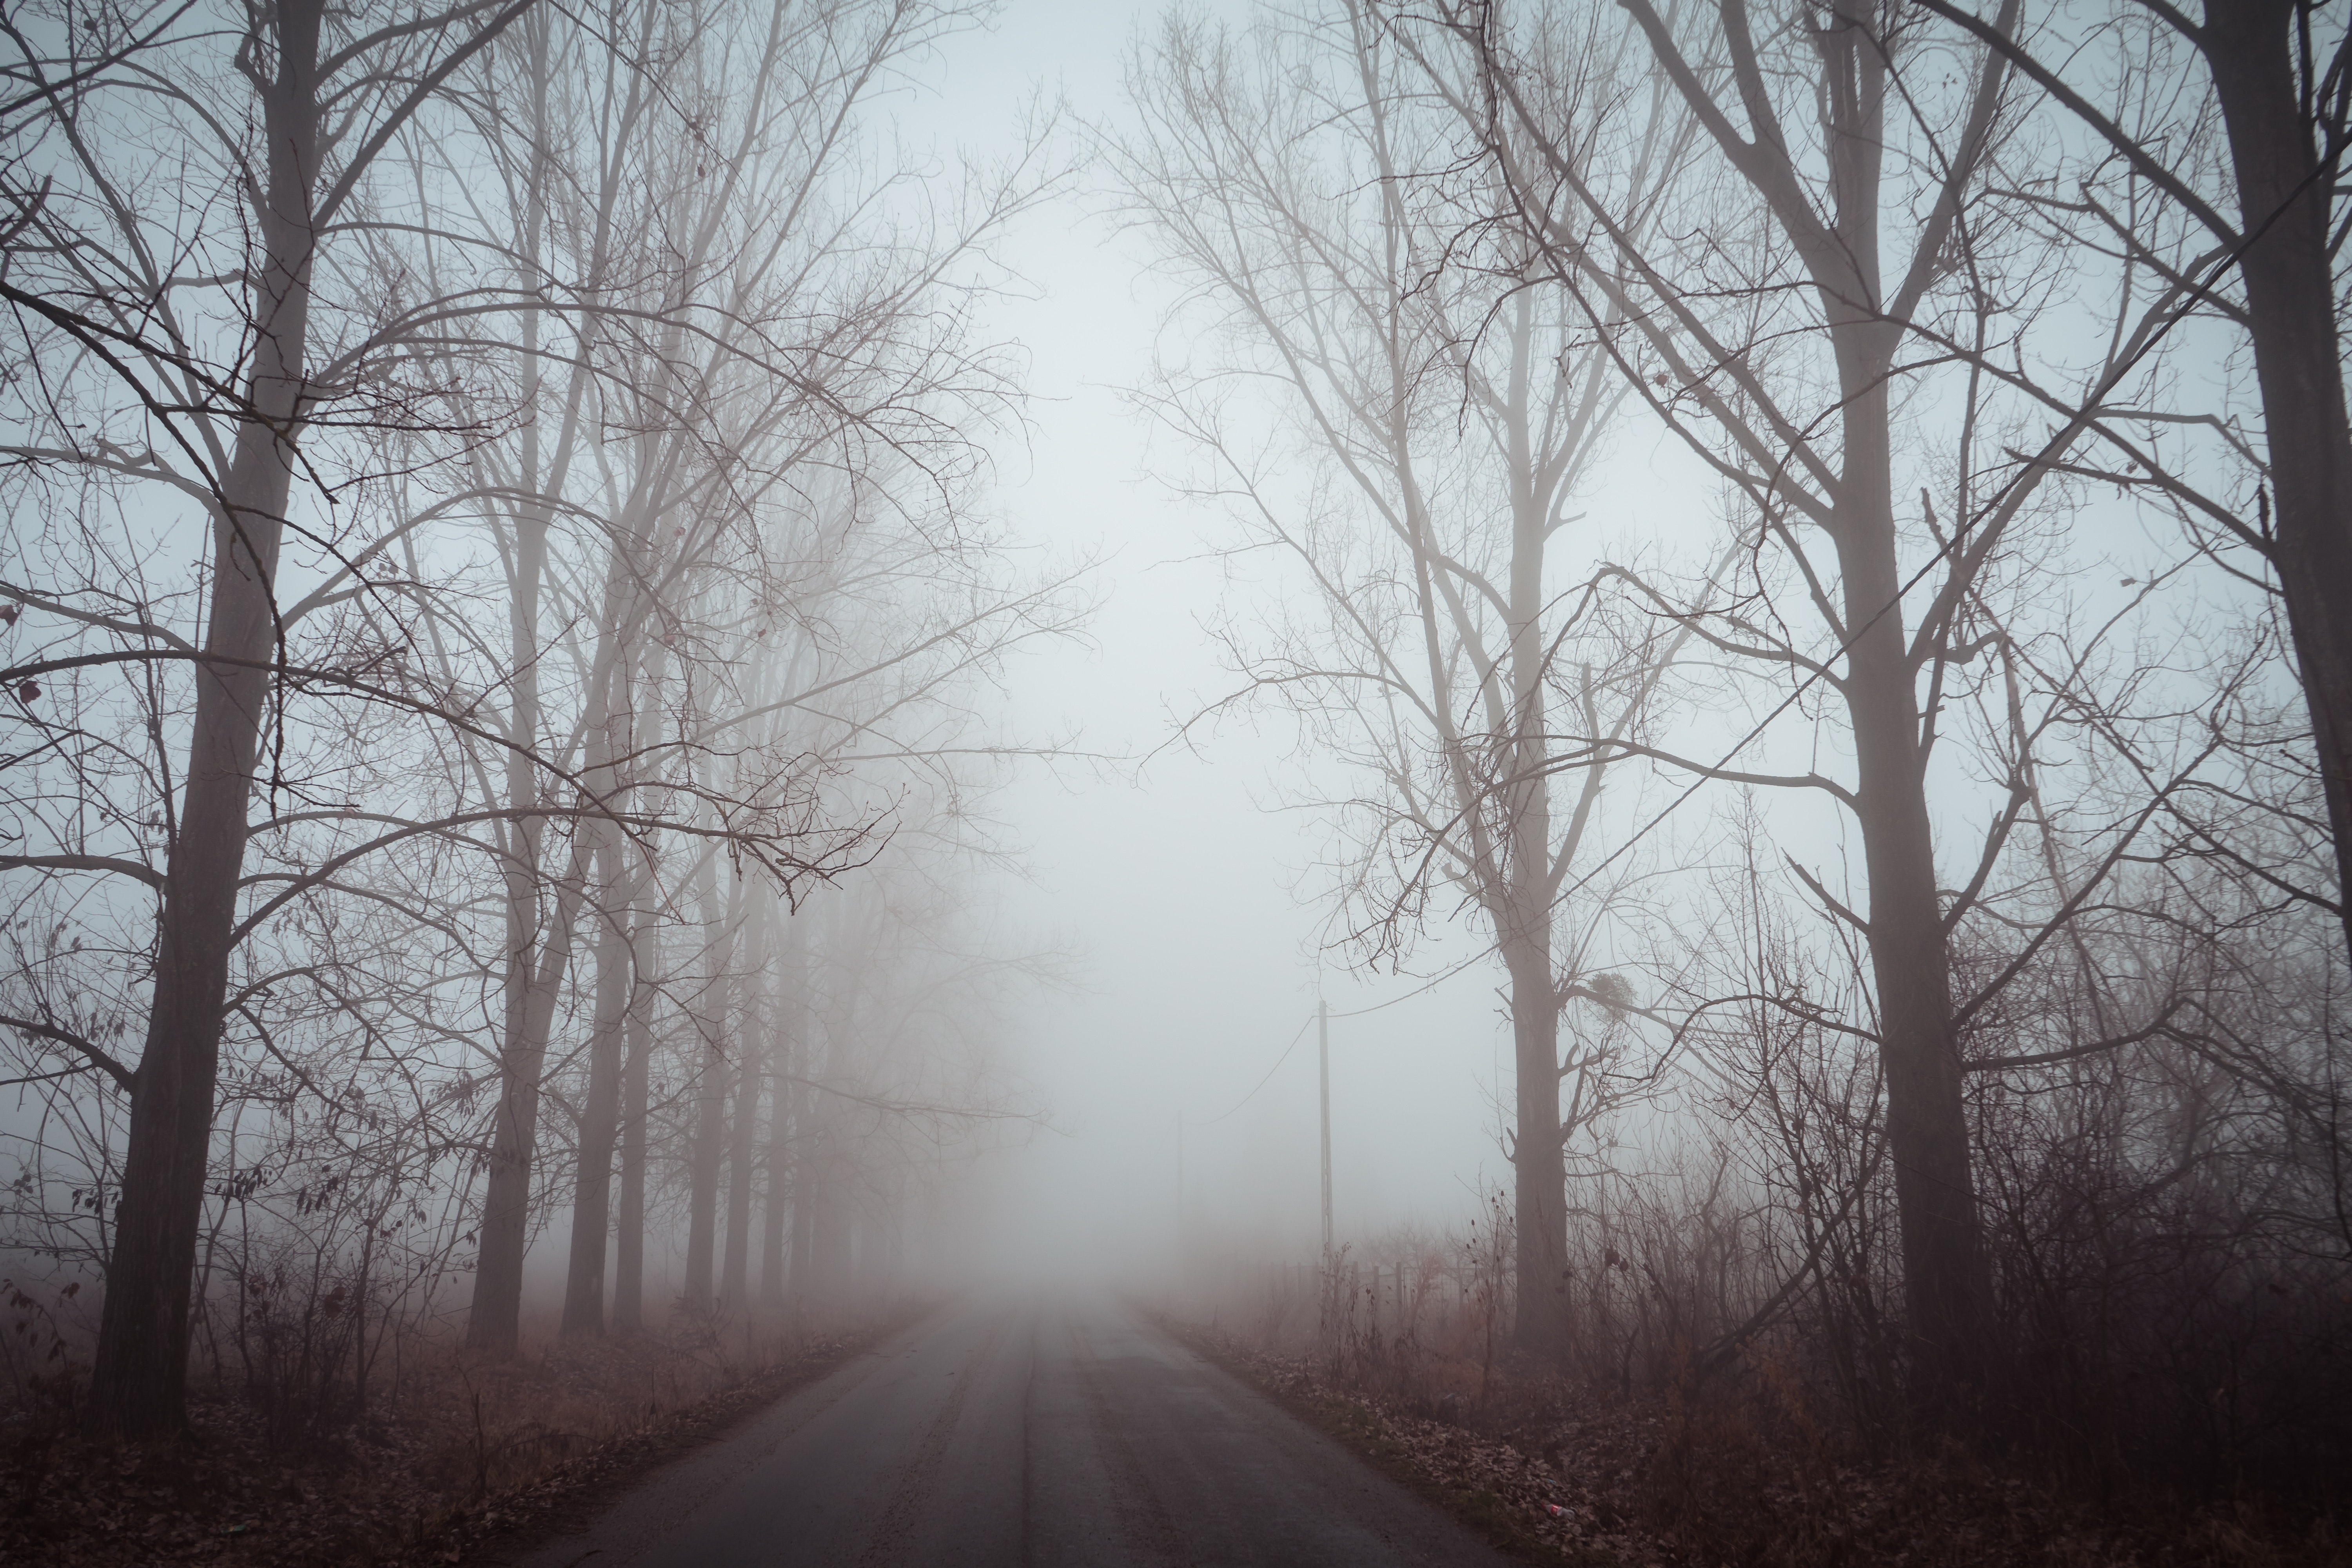 Фото обои туманный лес дорога деревья - бесплатные картинки на Fonwall